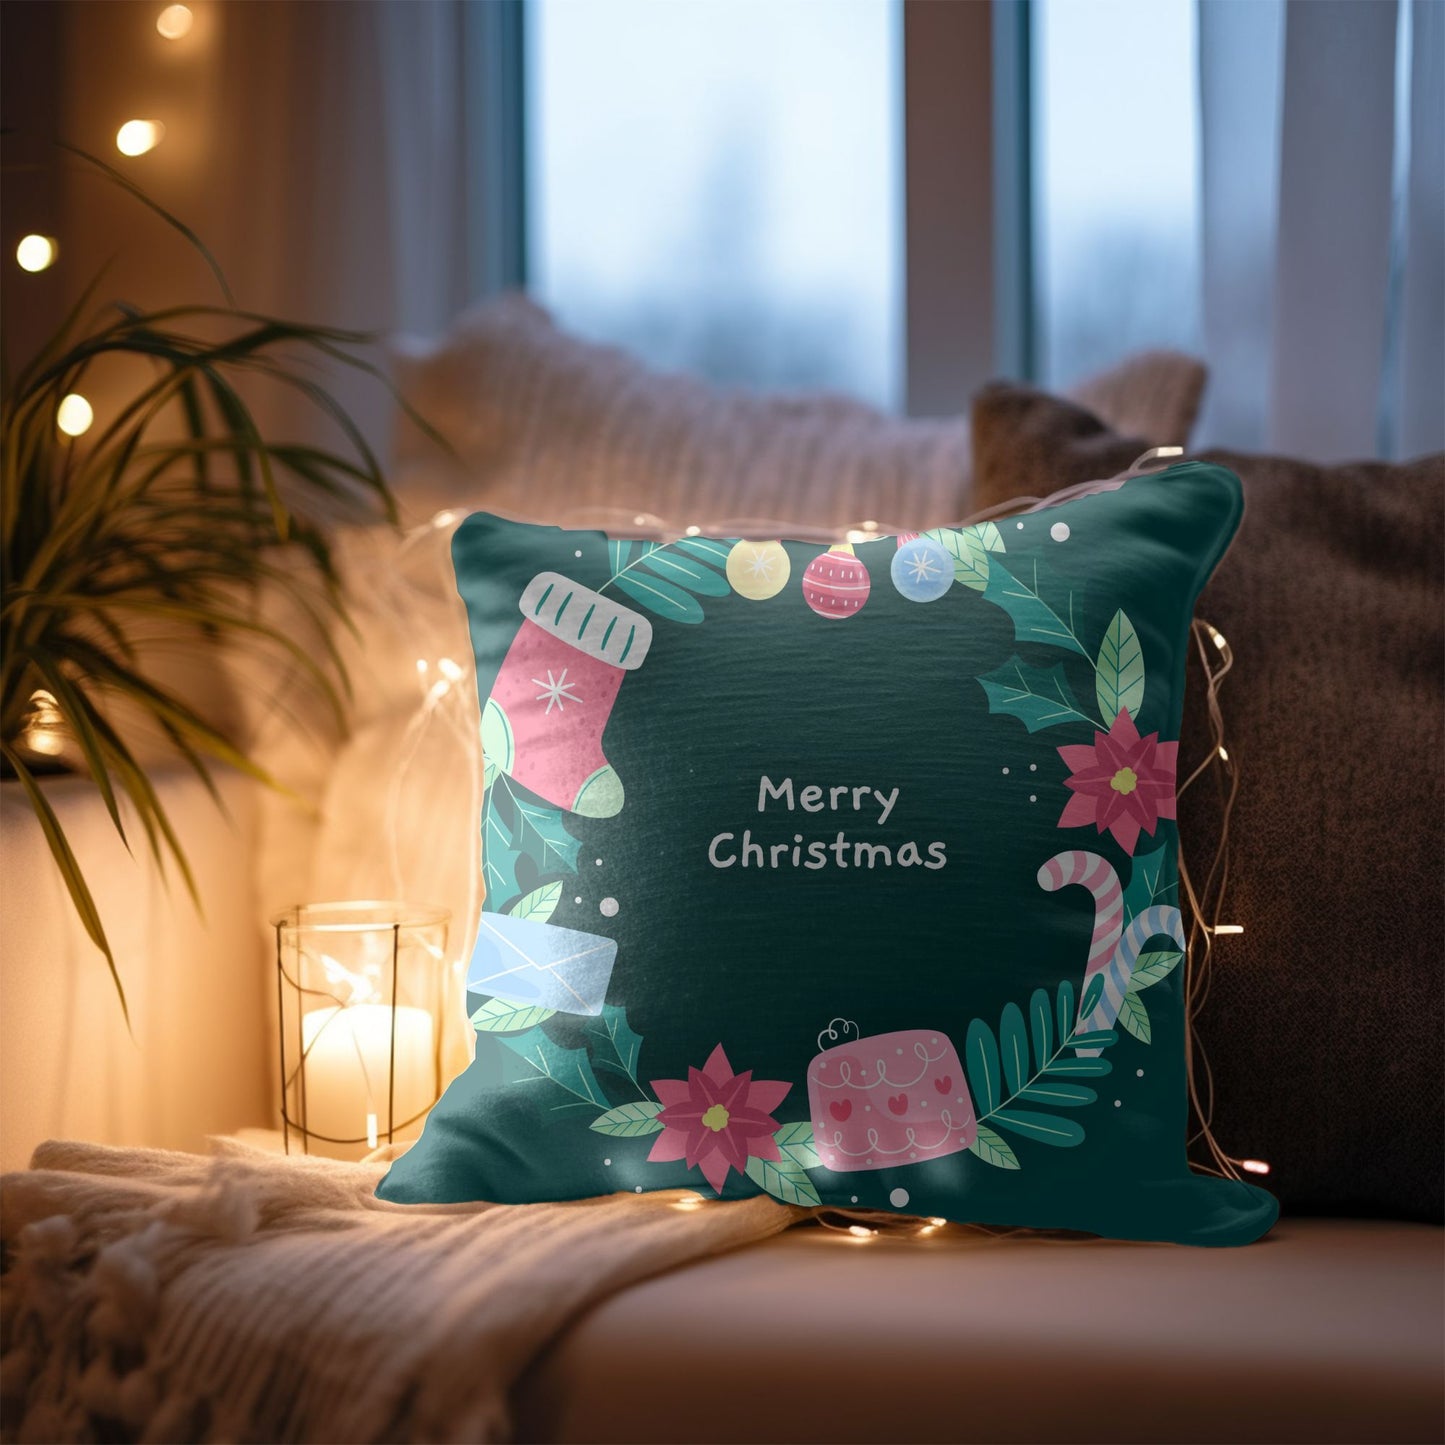 Festive Christmas-themed decorative cushion